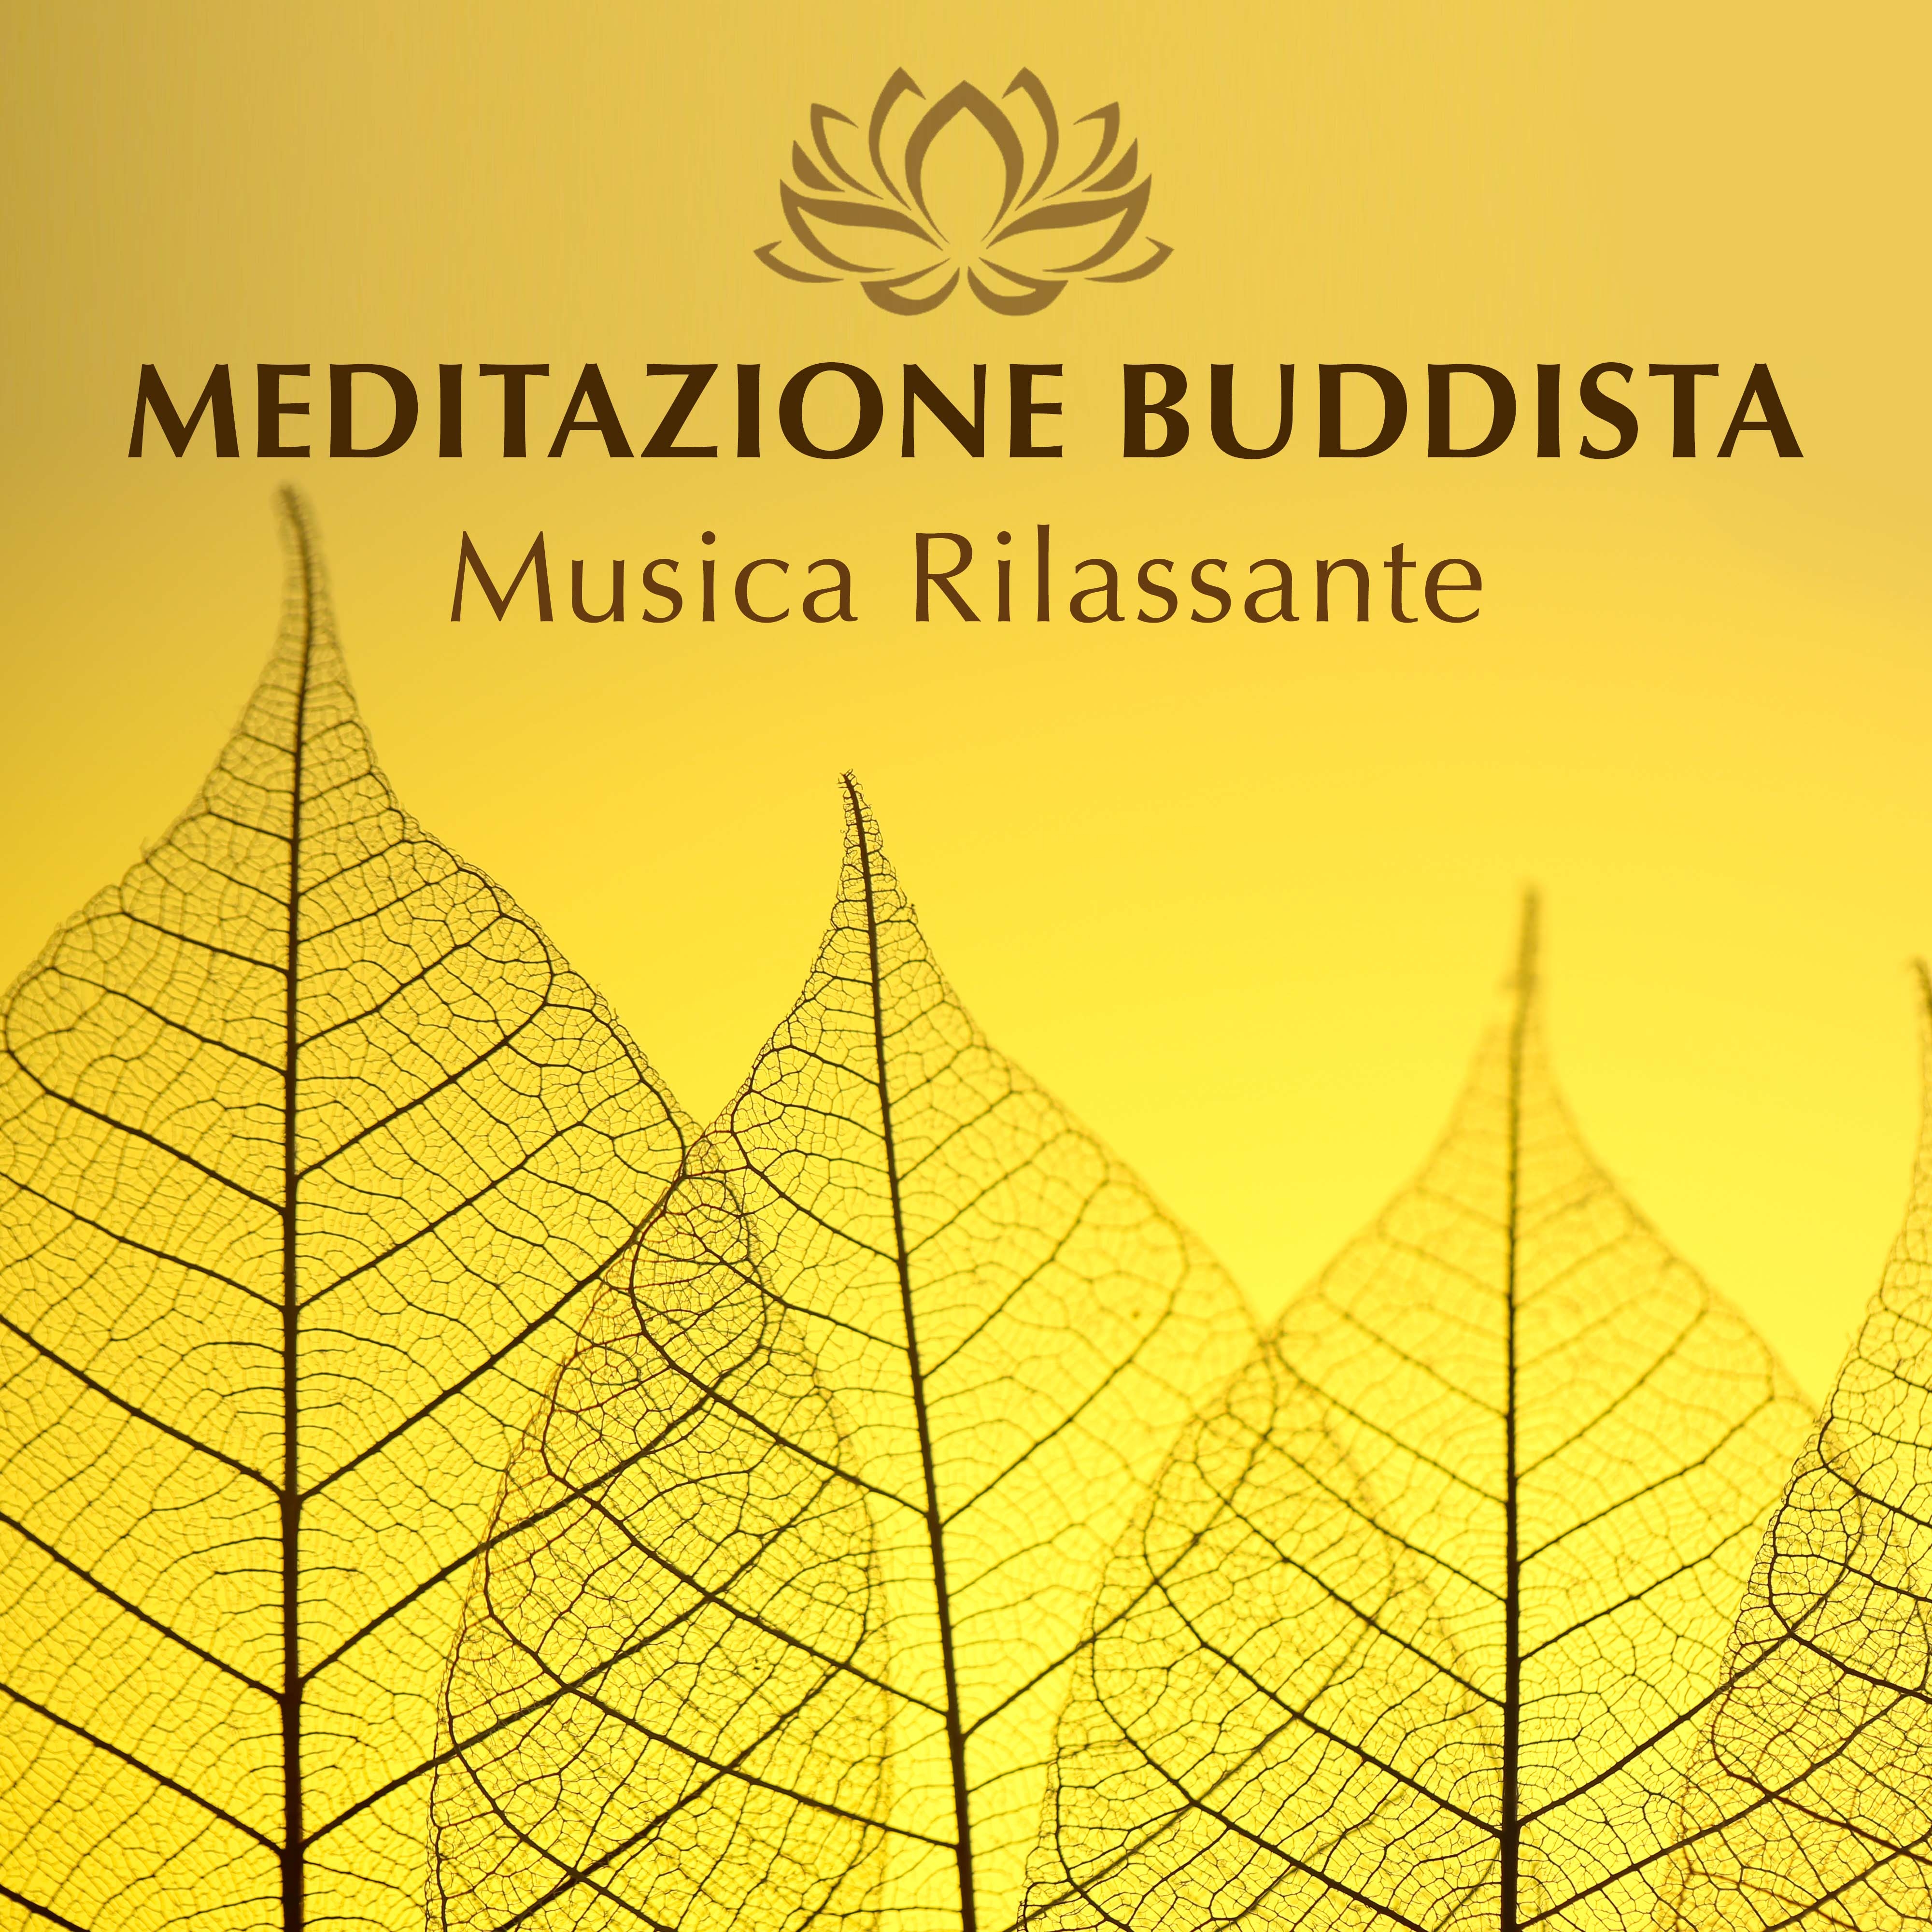 Meditazione Buddista - Musica Rilassante